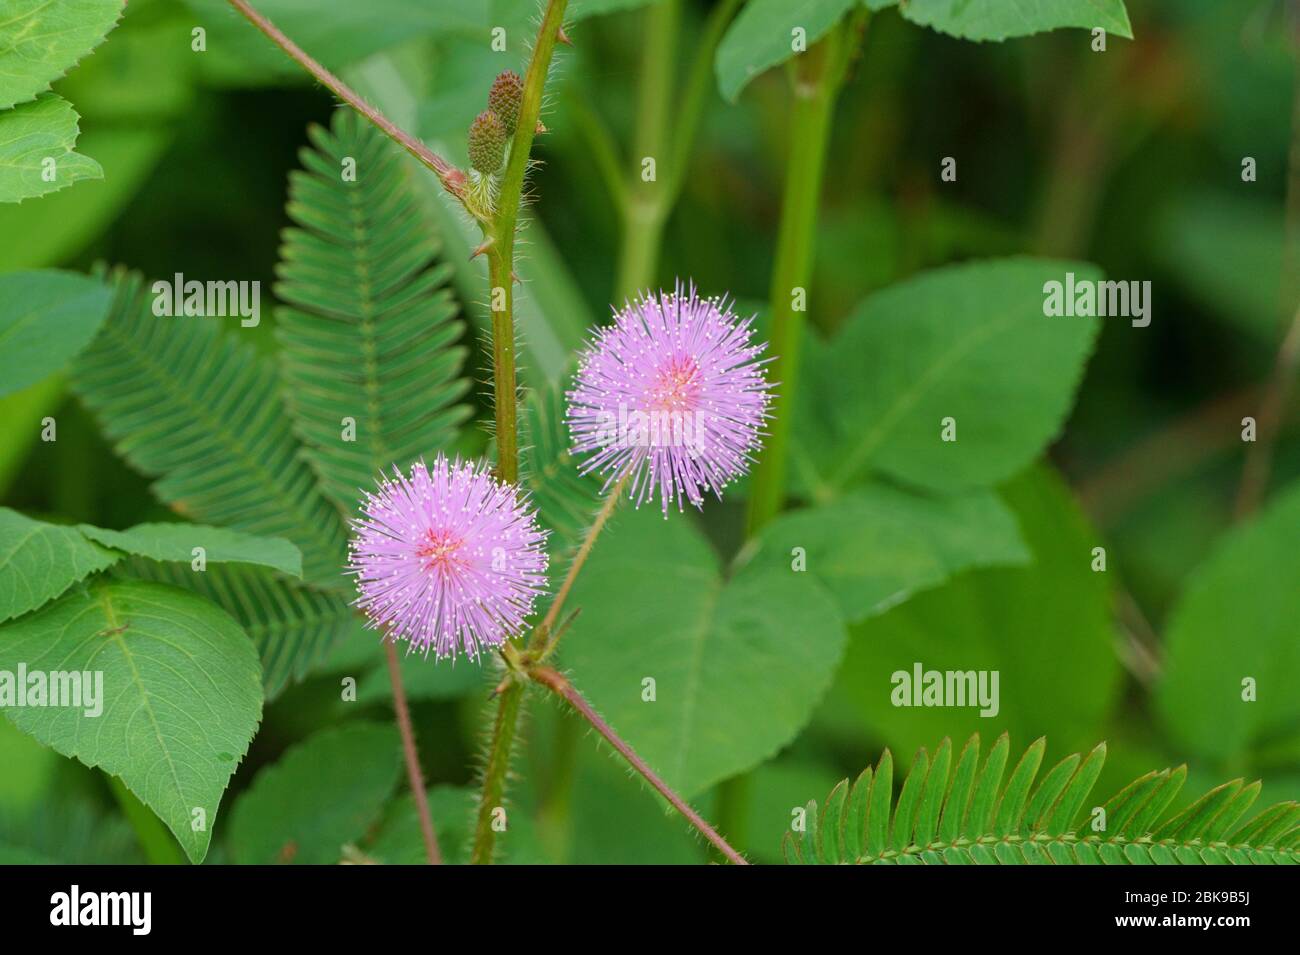 Rosa Mimosa pudica Blume auf grünen Blättern Stockfoto